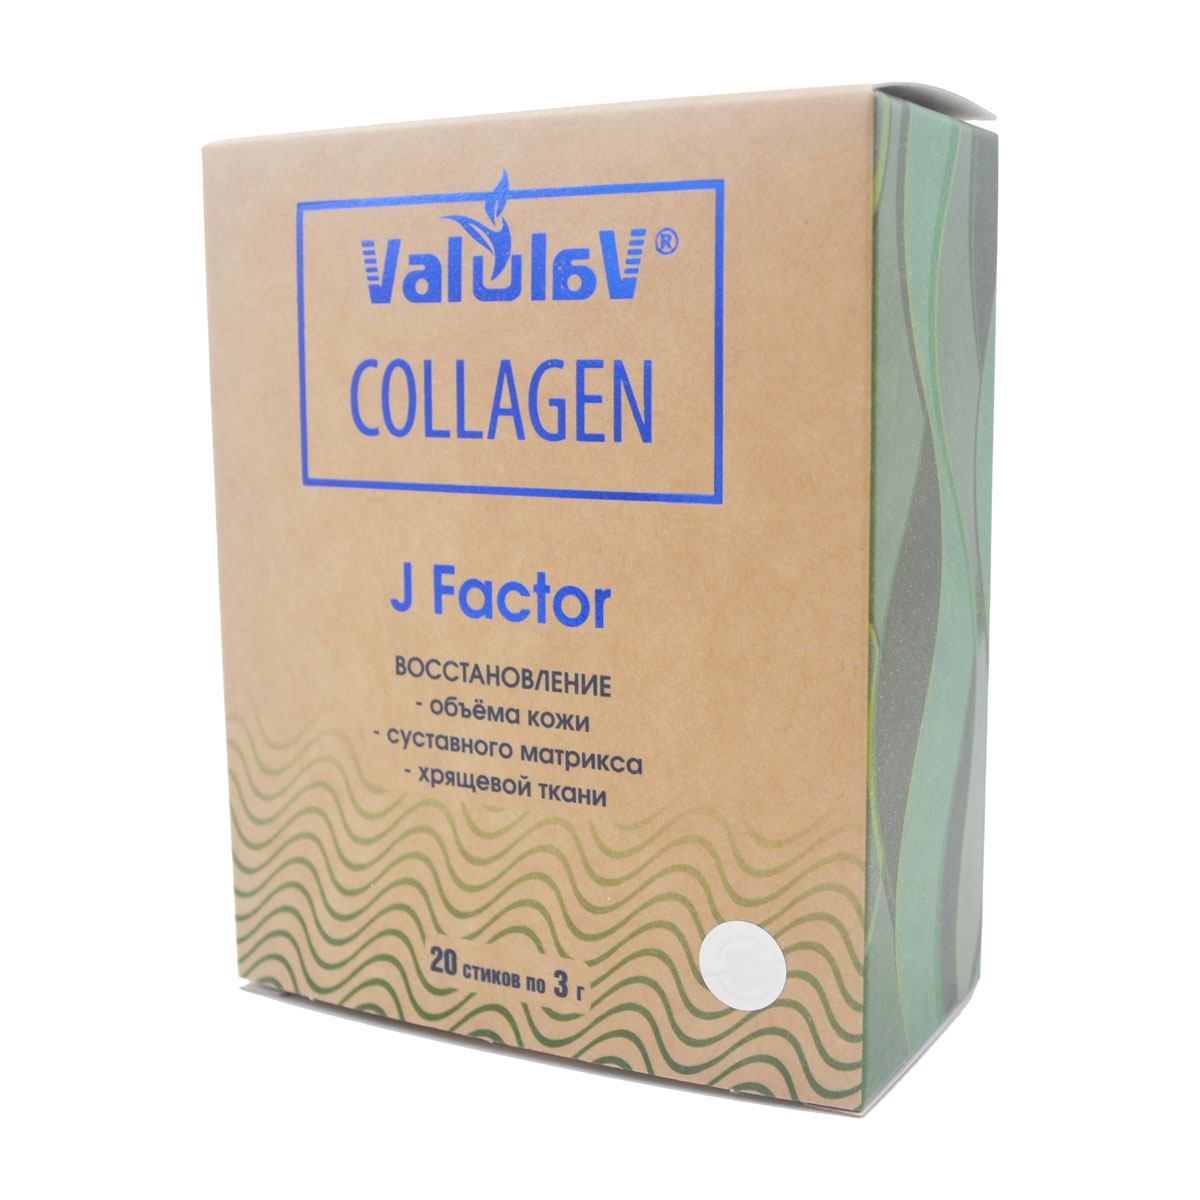 Коллаген 20 стиков. Коллаген морской в стиках. Marine Collagen в стиках. Valulav Collagen Multi Collagen Сашера мед. Valulav j Factor.